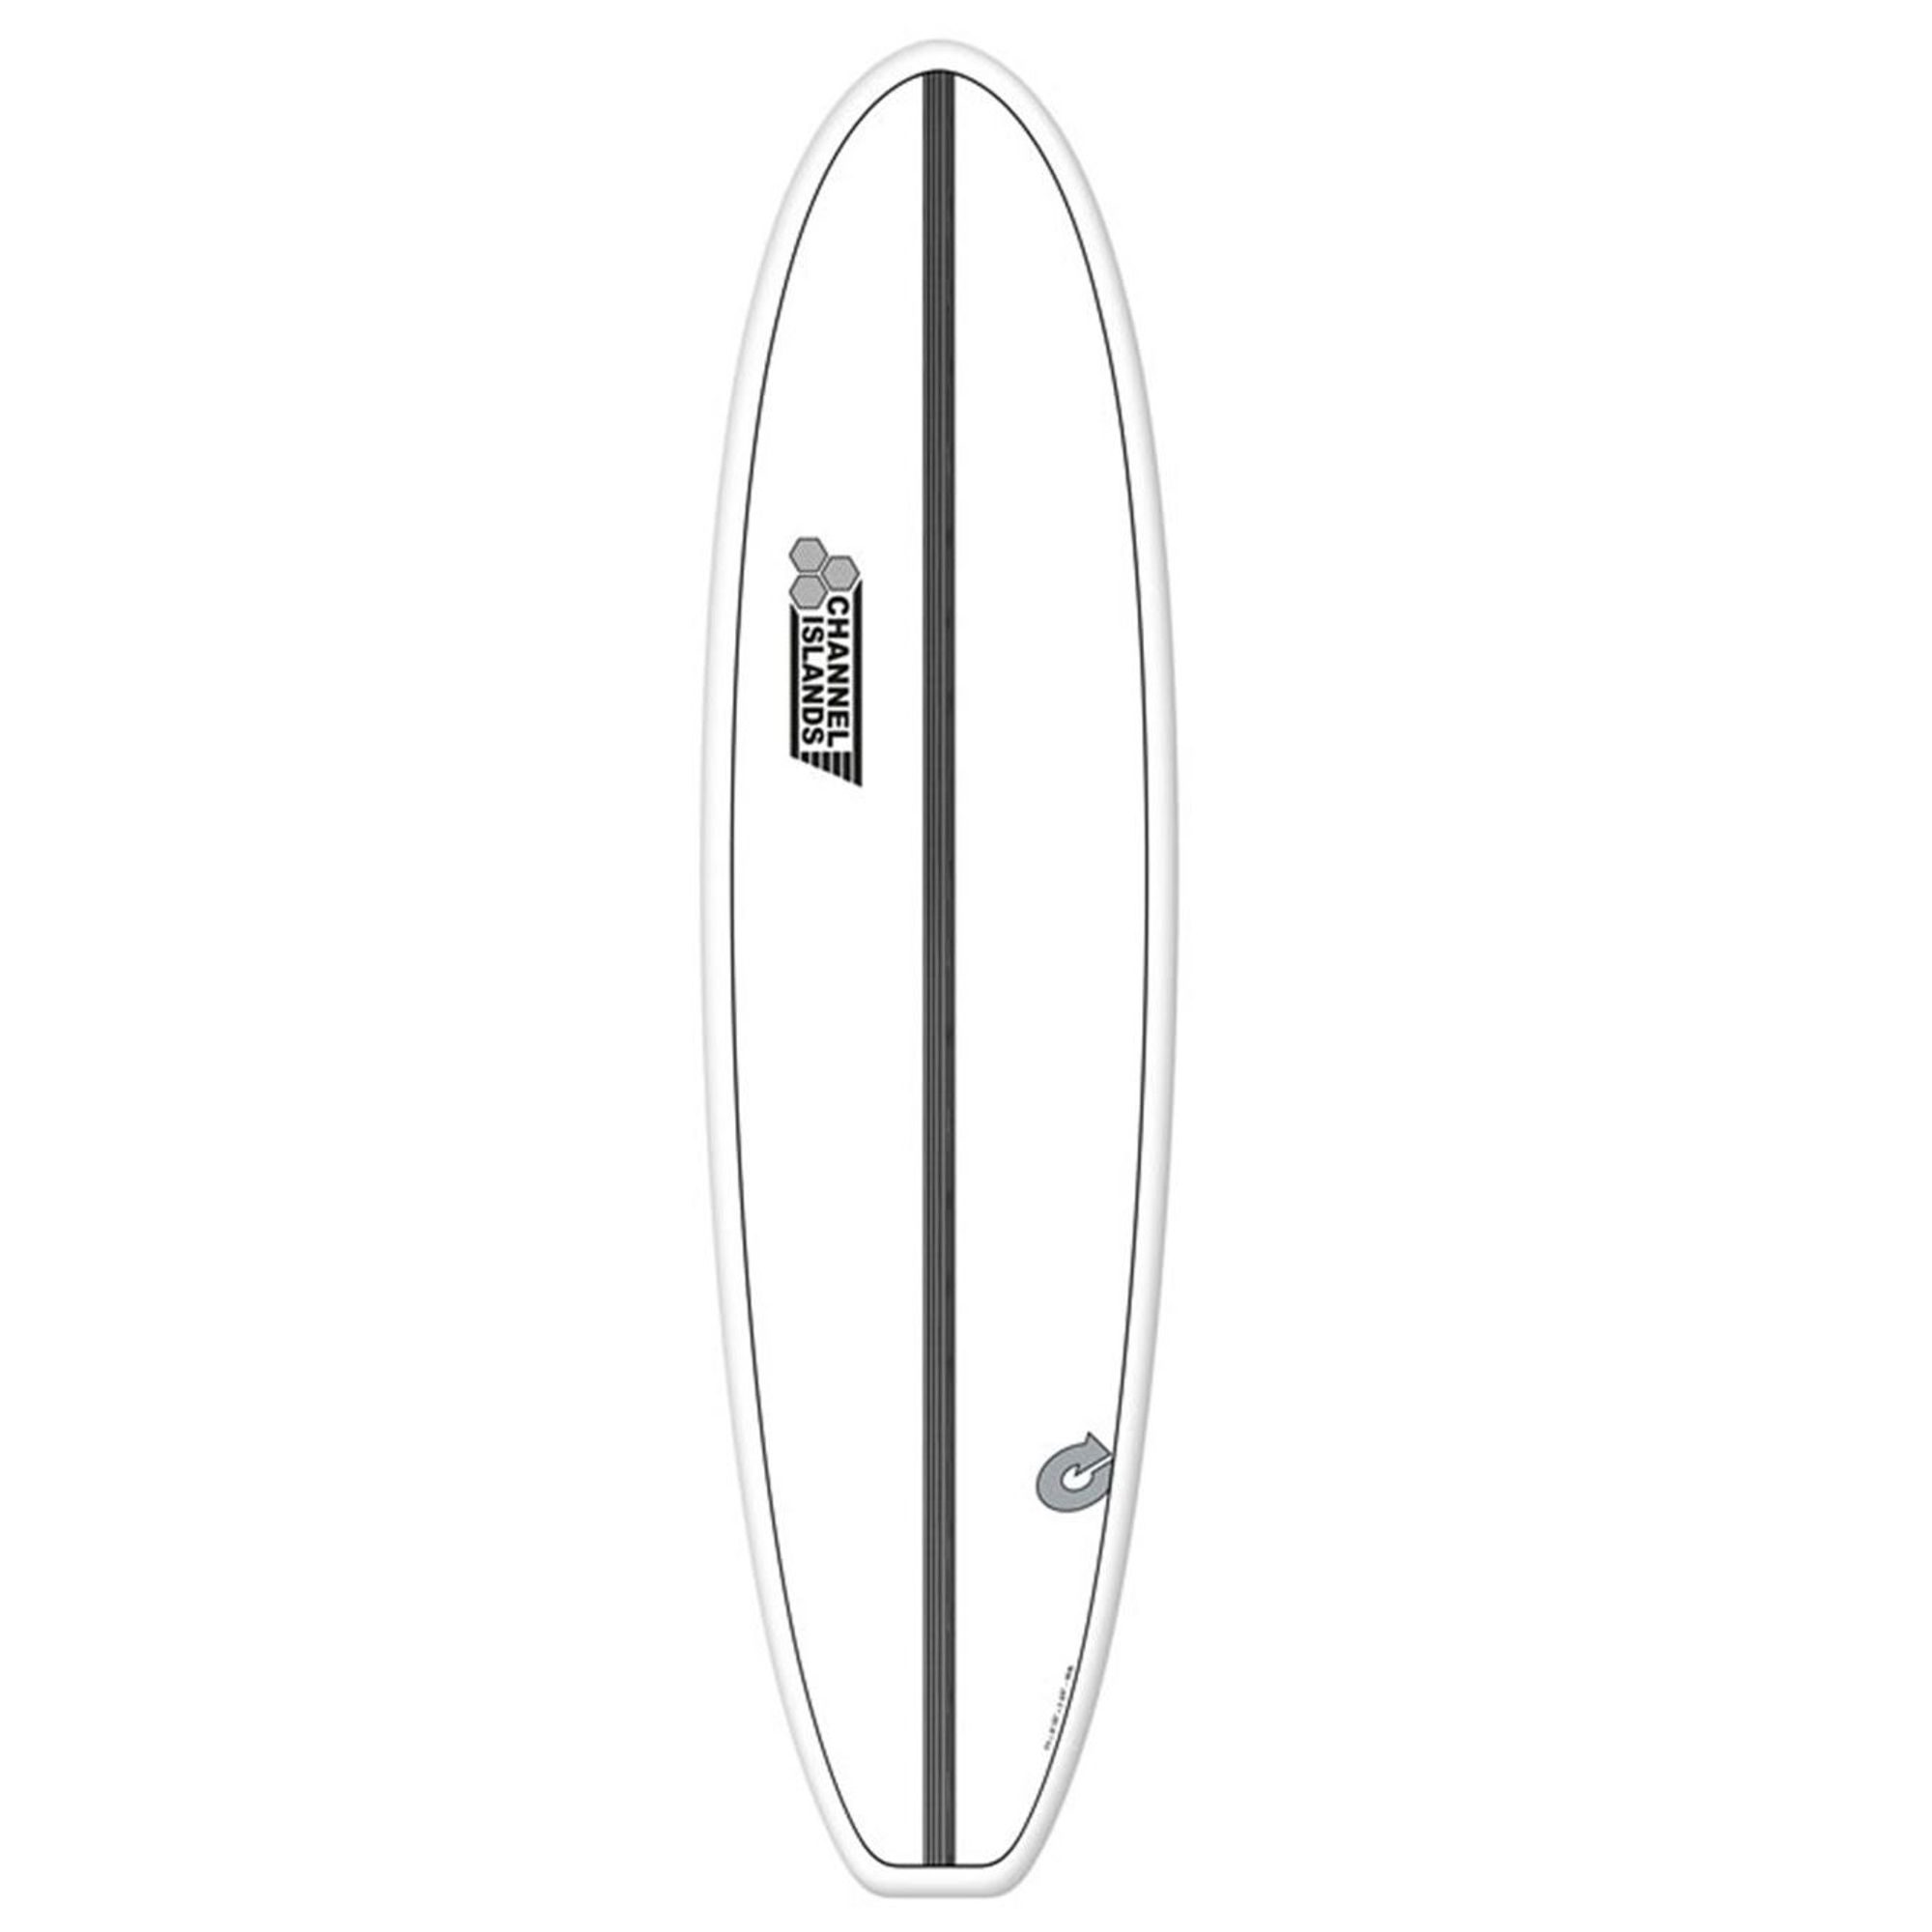 Surfboard CHANNEL ISLANDS X-lite Chancho 7.6 White Verkauf nur an autorisierte Channel Islands Dealer